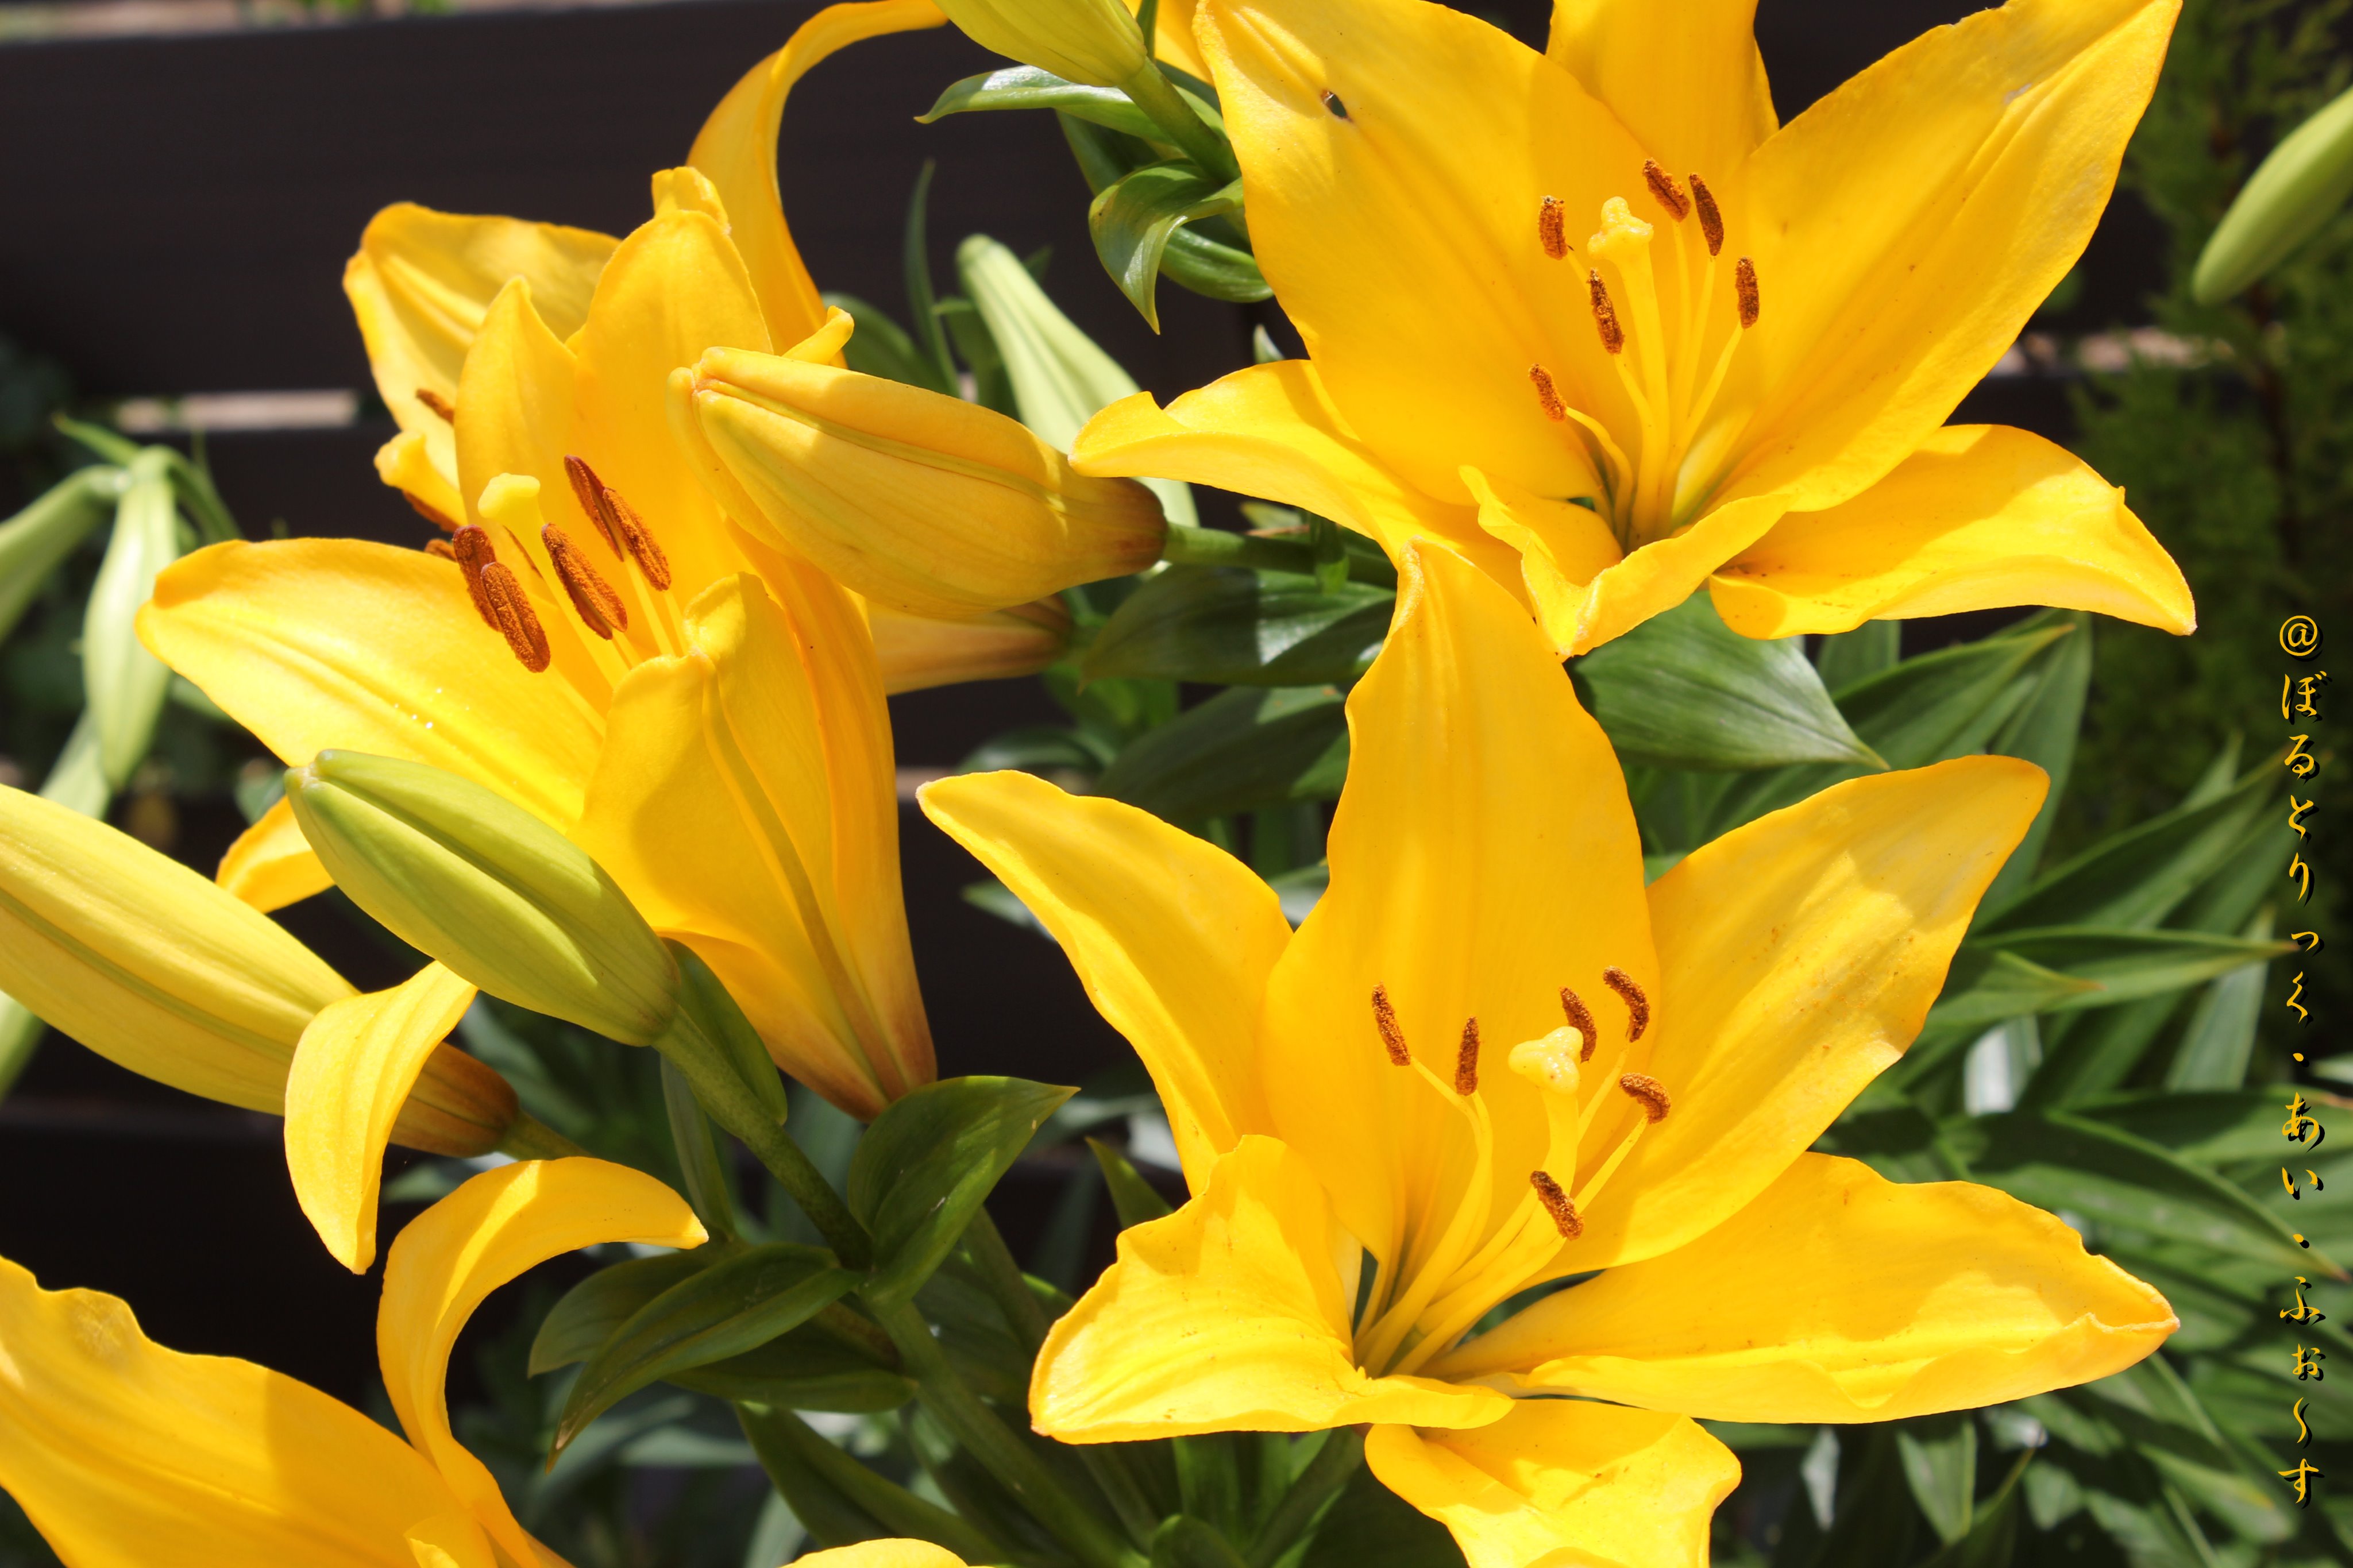 تويتر Vtifカスタマイズ على تويتر 黄色い百合の誕生花の日 多分 スカシユリかな 7月19日 誕生花の一つ 黄色い百合 スカシユリ黄の花言葉 注目を浴びる 飾らぬ美 T Co Uhqpoyr3cv